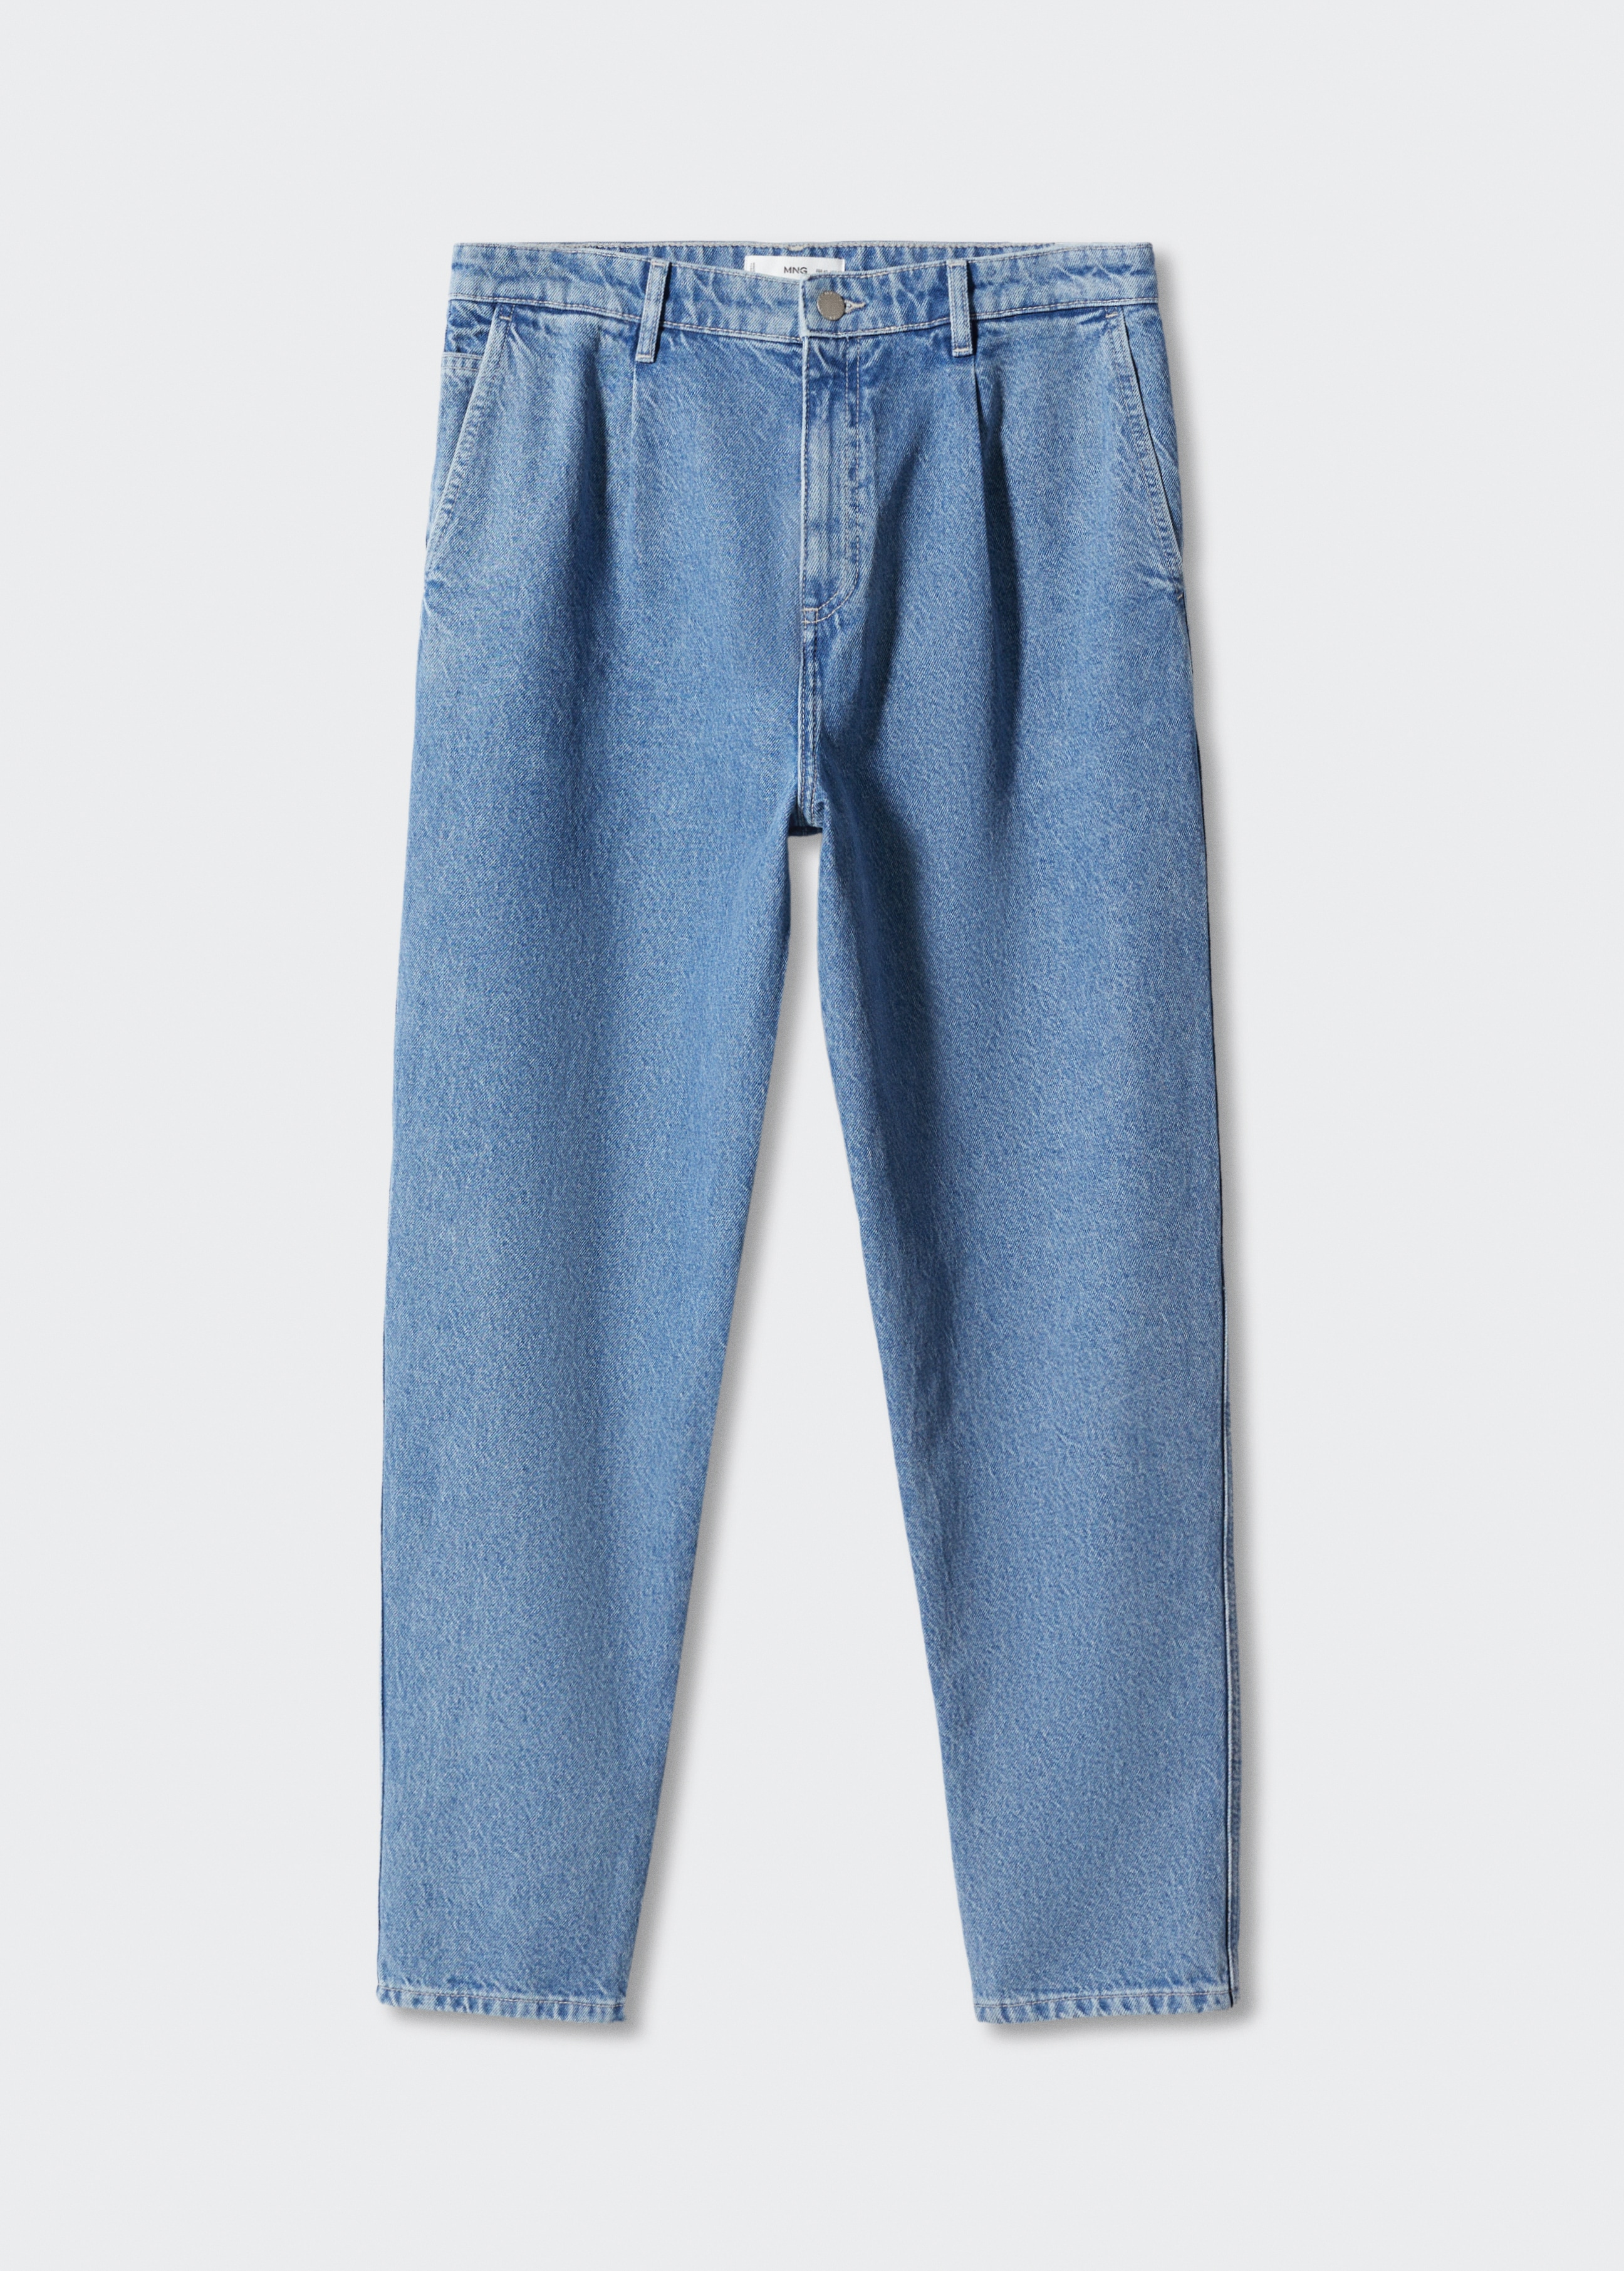 Jeans slouchy pinzas  - Artículo sin modelo